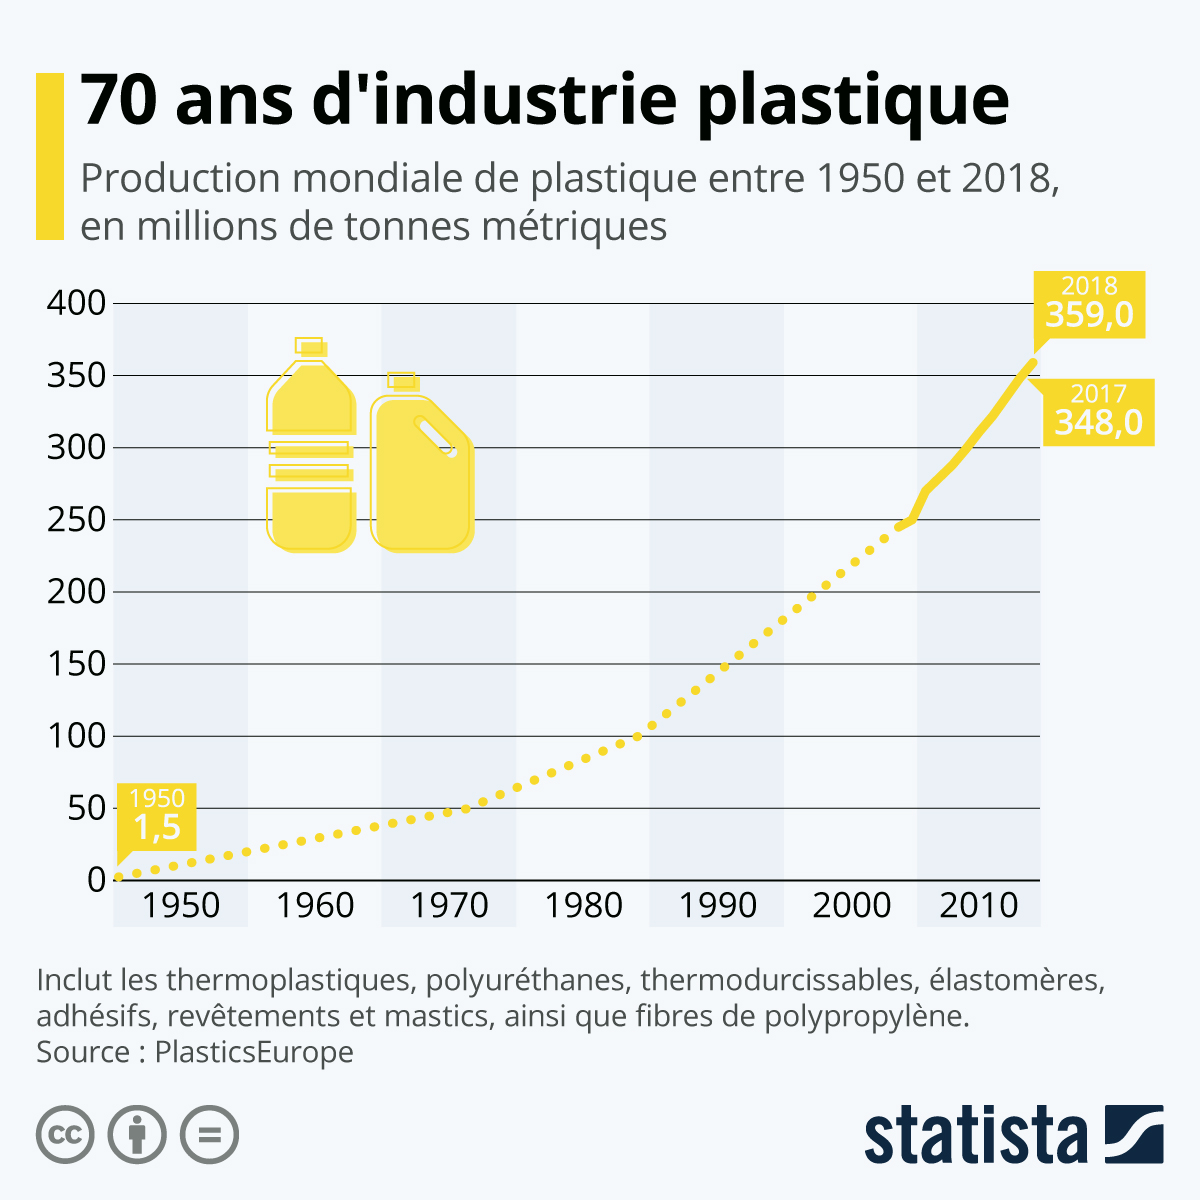 Production mondiale de plastique en 70 ans selon Statista.